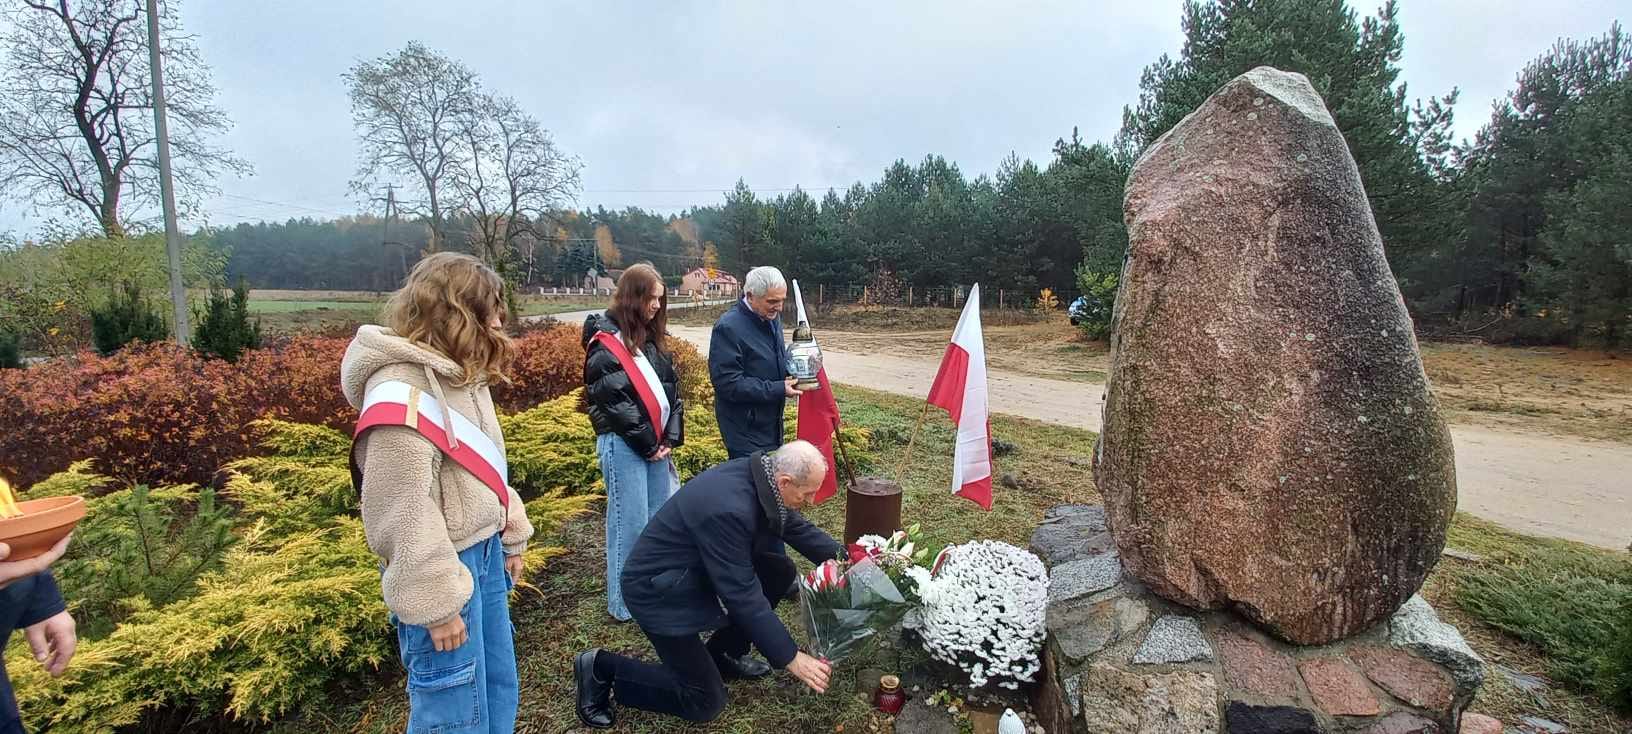 Przedstawiciele władz samorządowych oraz uczniowie podczas składania kwiatów przy kamieniu pamiątkowym w Bialymbłocie.